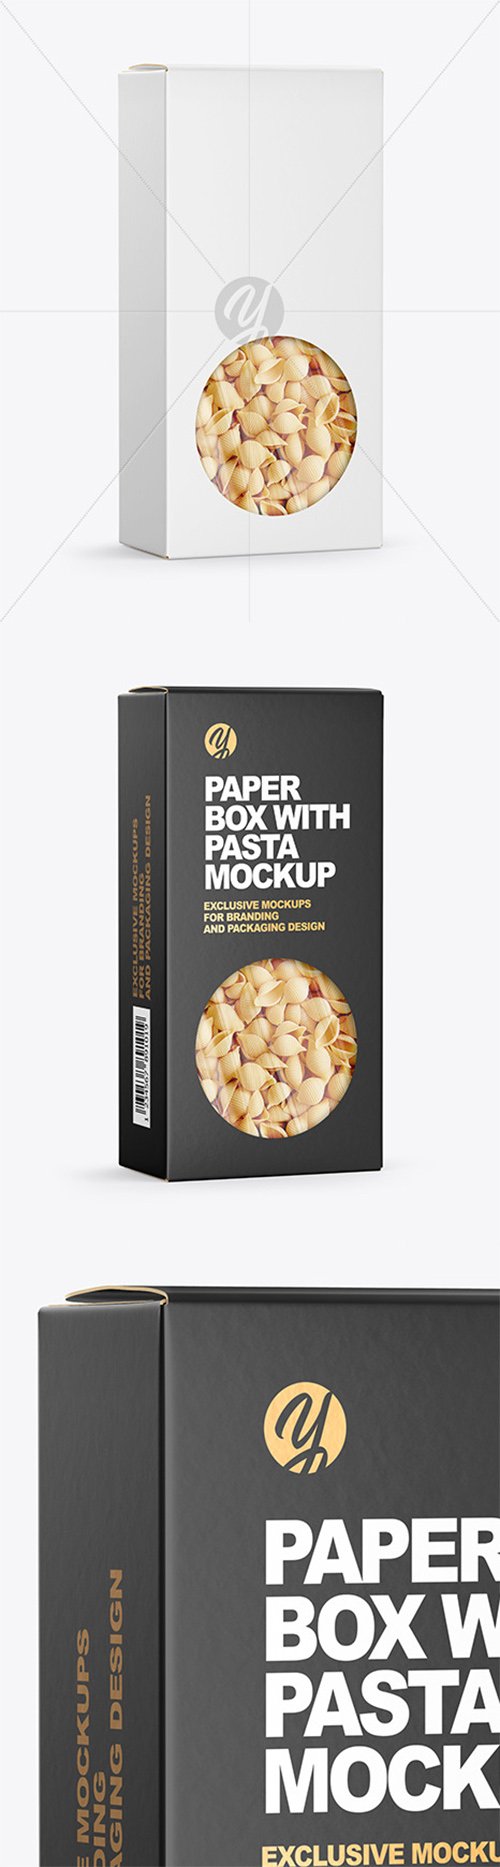 Paper Box with Conchiglie Rigate Pasta Mockup 65332